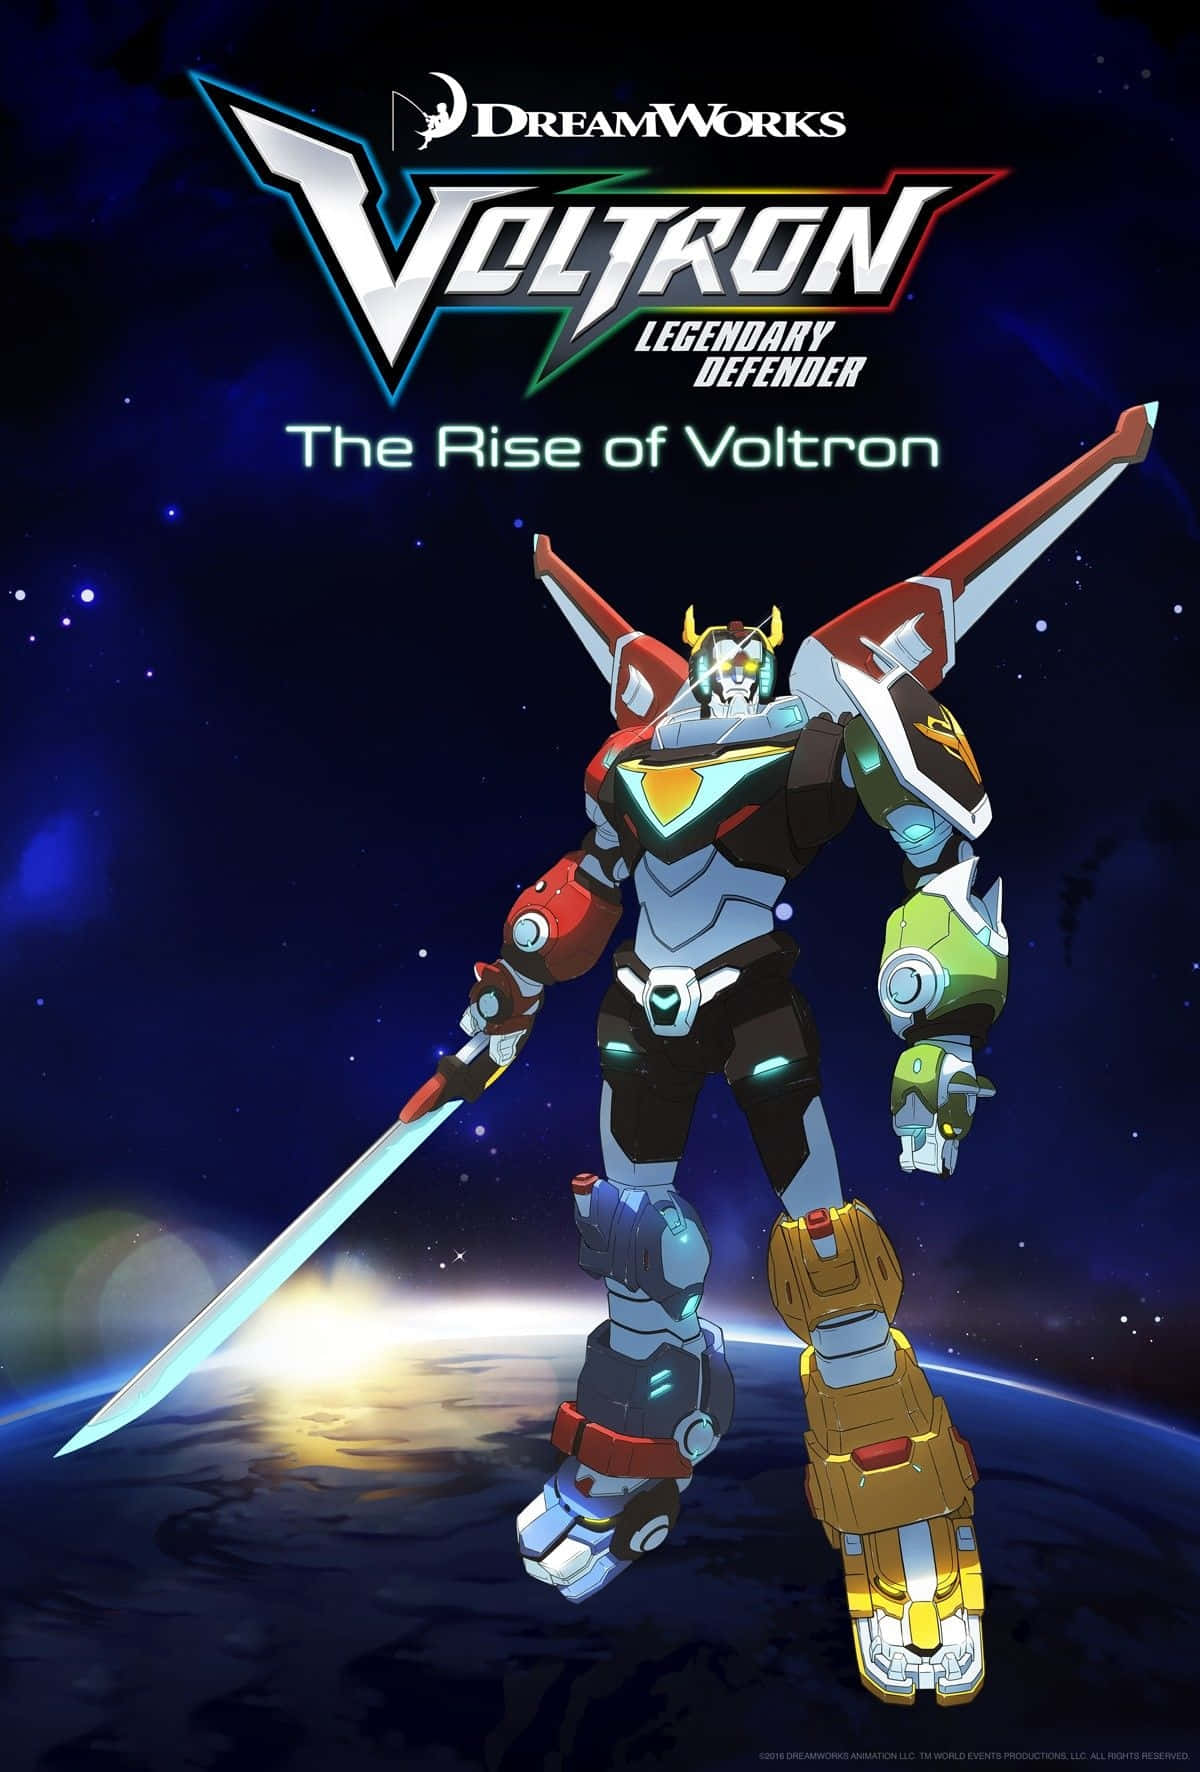 Den heltemodige Voltron forsvarer universet. Wallpaper